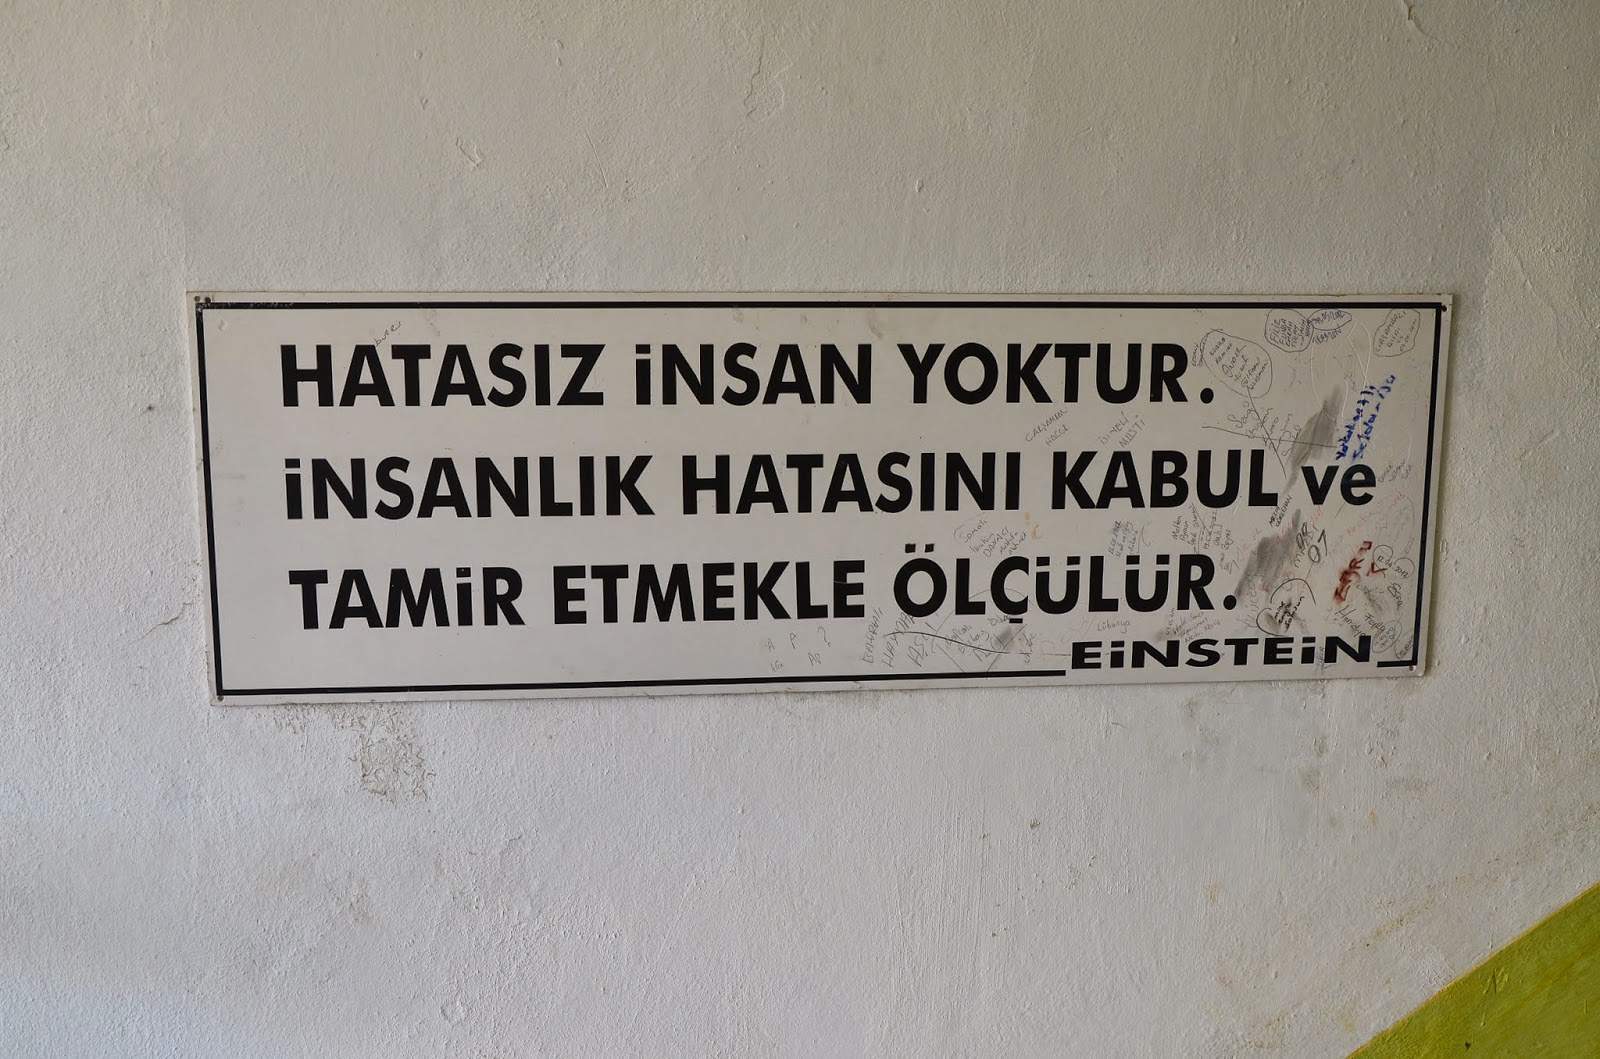 Quote by Albert Einstein at Sinop Cezaevi in Sinop, Turkey